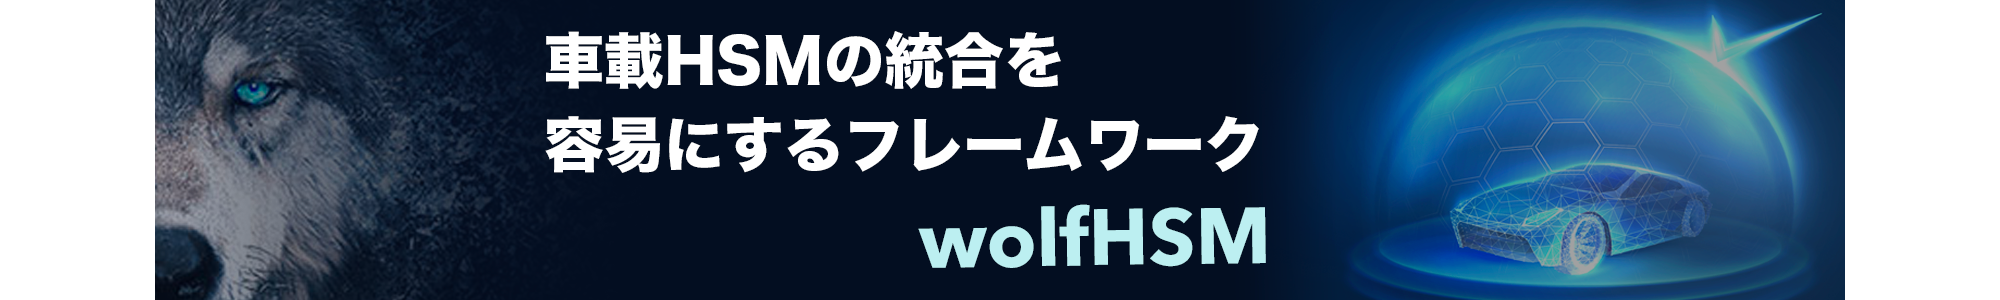 wolfHSM_w